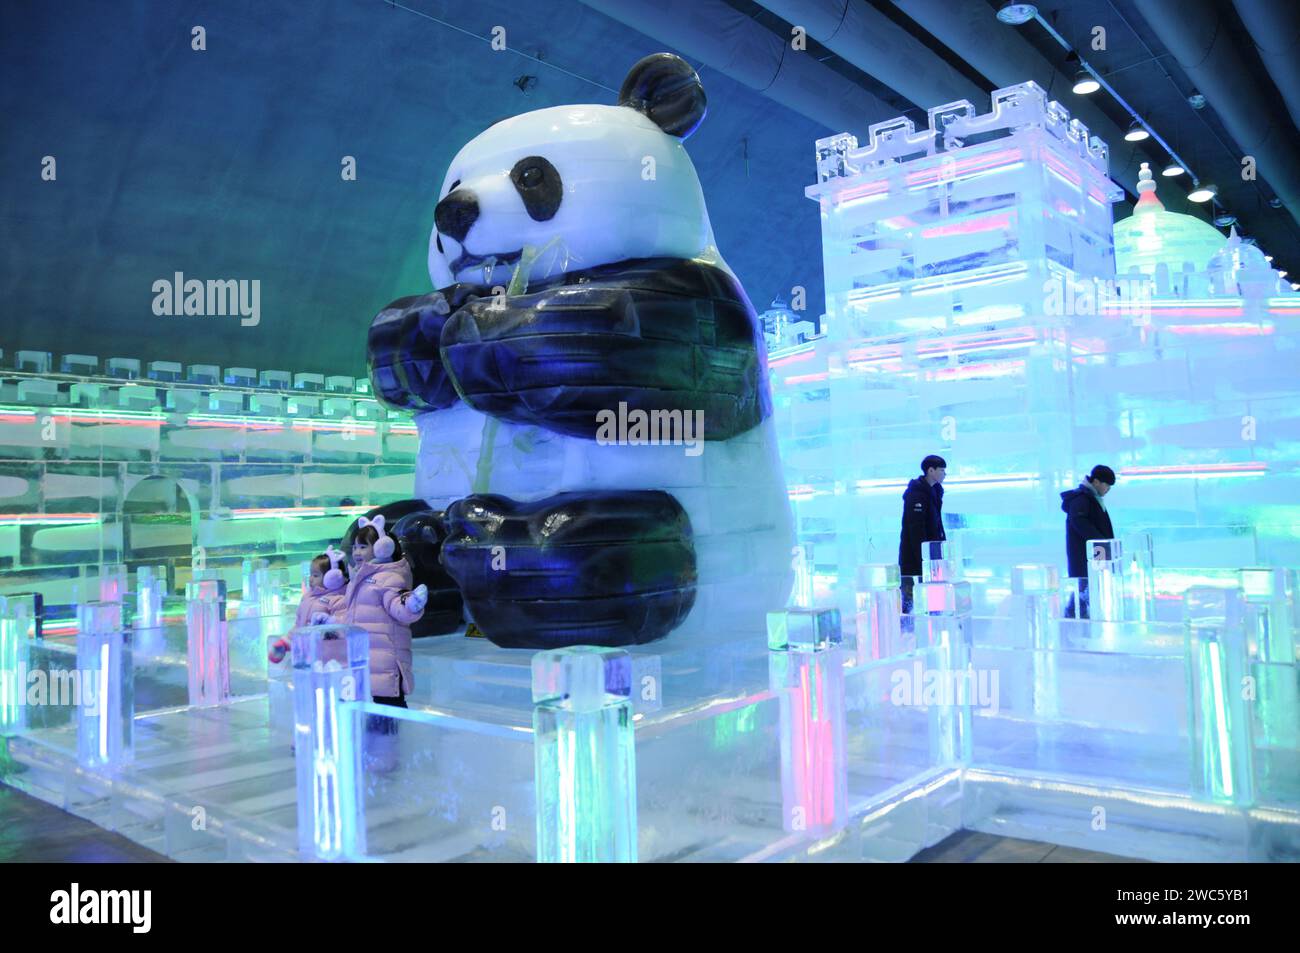 Province de Gangwon, Corée du Sud. 13 janvier 2024. Les touristes voient des statues de glace réalisées par les sculpteurs de glace Harbin lors du festival de glace Hwacheon Sancheoneo dans la province de Gangwon, Corée du Sud, le 13 janvier 2024. Capitale de la province la plus septentrionale de la Chine, Heilongjiang, Harbin est réputée pour être le « joyau de la glace et de la neige » du pays. Cette année, les sculpteurs de glace de Harbin ont été invités à créer des sculptures de glace pour le festival de glace de Hwacheon Sancheoneo, l'un des festivals d'hiver sud-coréens les plus populaires. Crédit : Yang Chang/Xinhua/Alamy Live News Banque D'Images